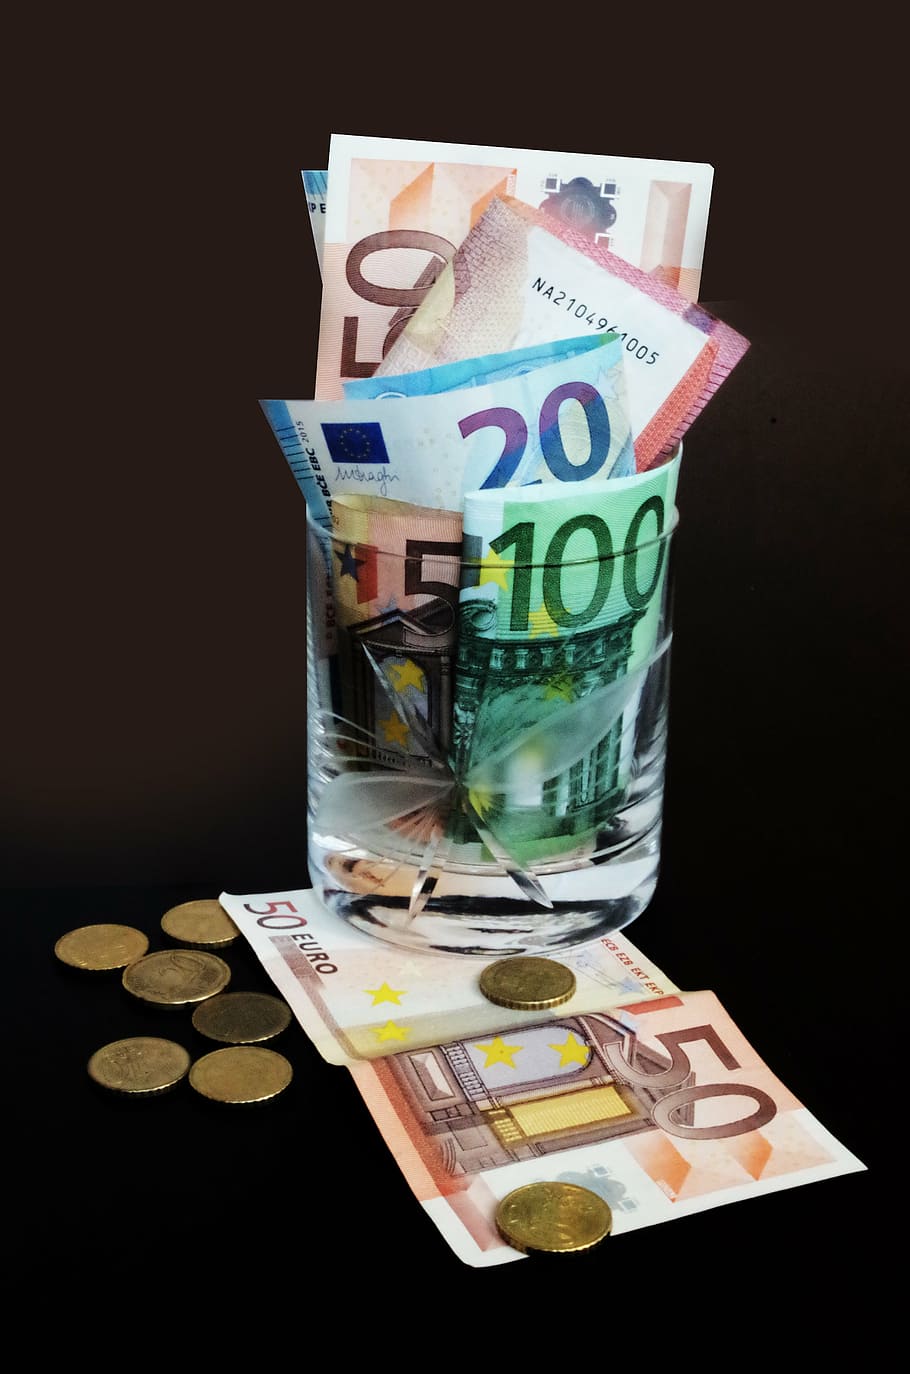 investimento, investidor, dinheiro, euros, moeda, papel moeda, finanças, riqueza, europeu moeda da união, negócios